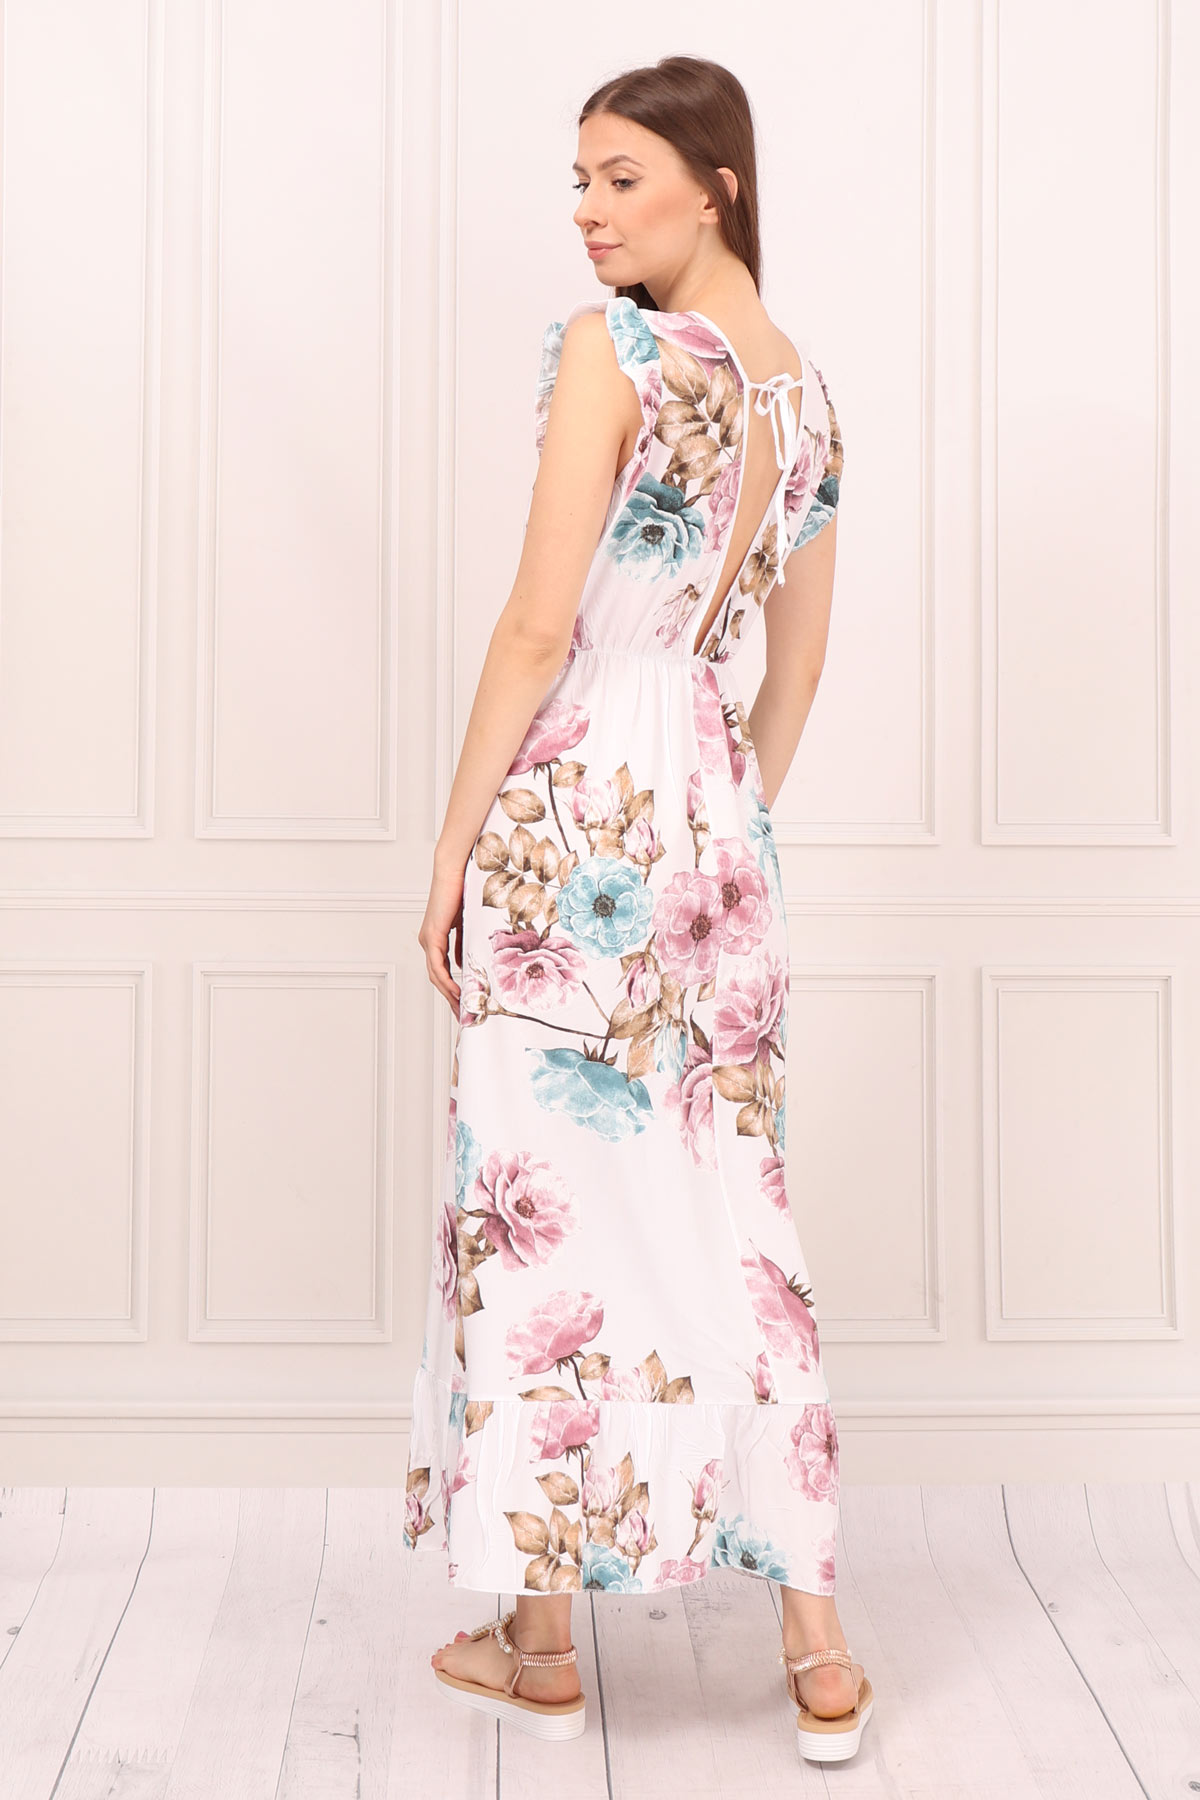 Śmietanowa sukienka letnia maxi w kwiaty wiązana na plecach